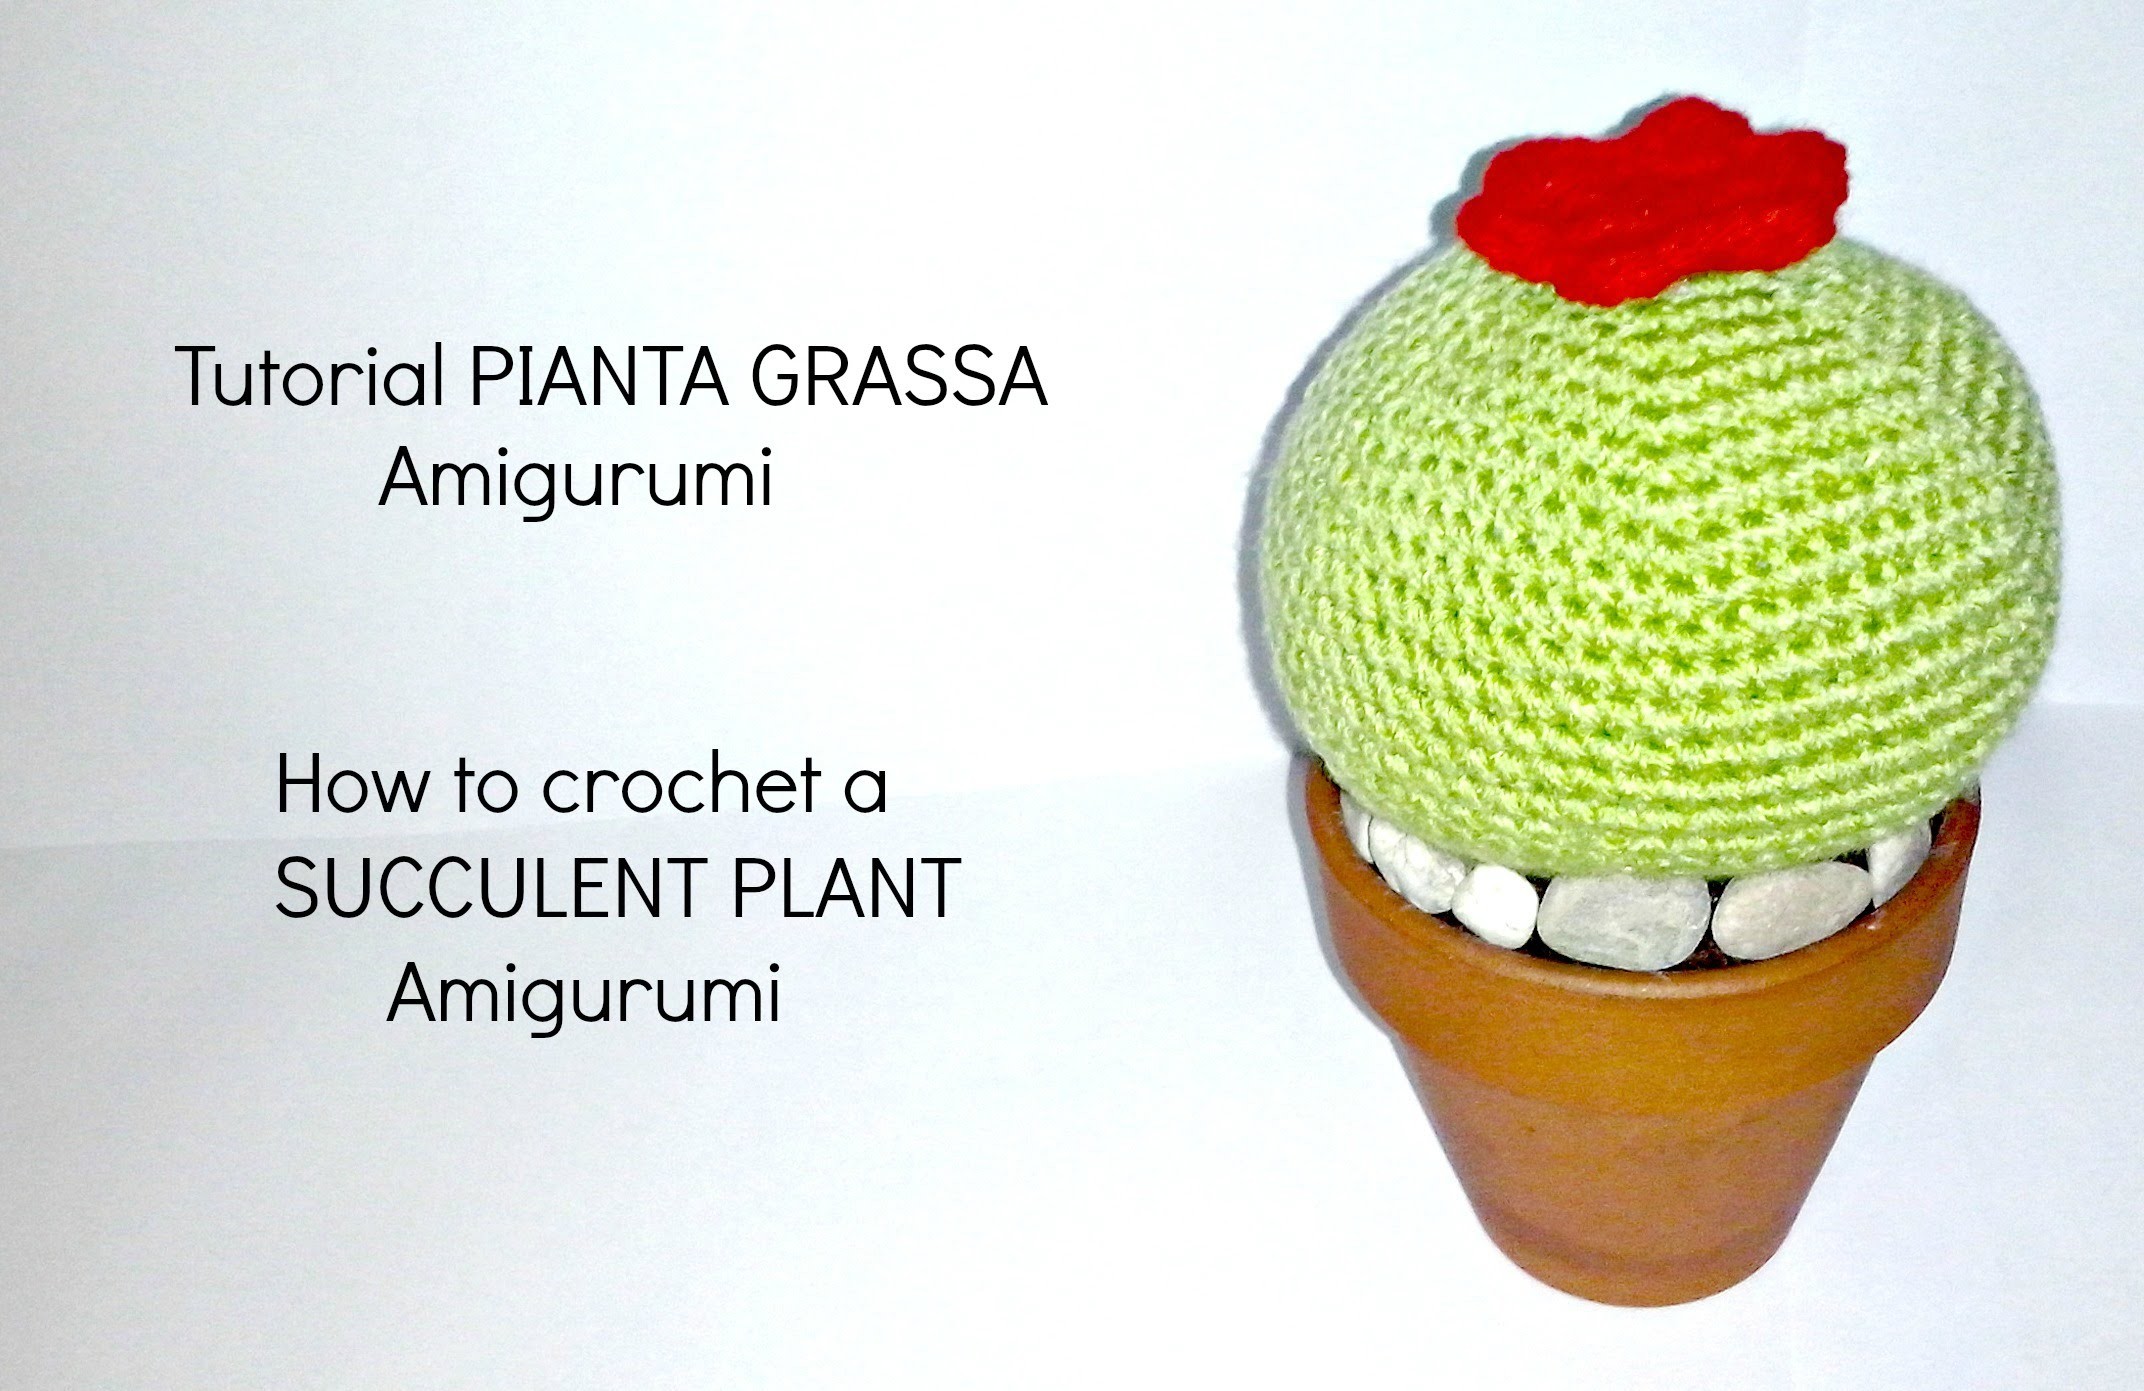 Tutorial Pianta grassa amigurumi | HOW TO CROCHET A SUCCULENT PLANT Amigurumi